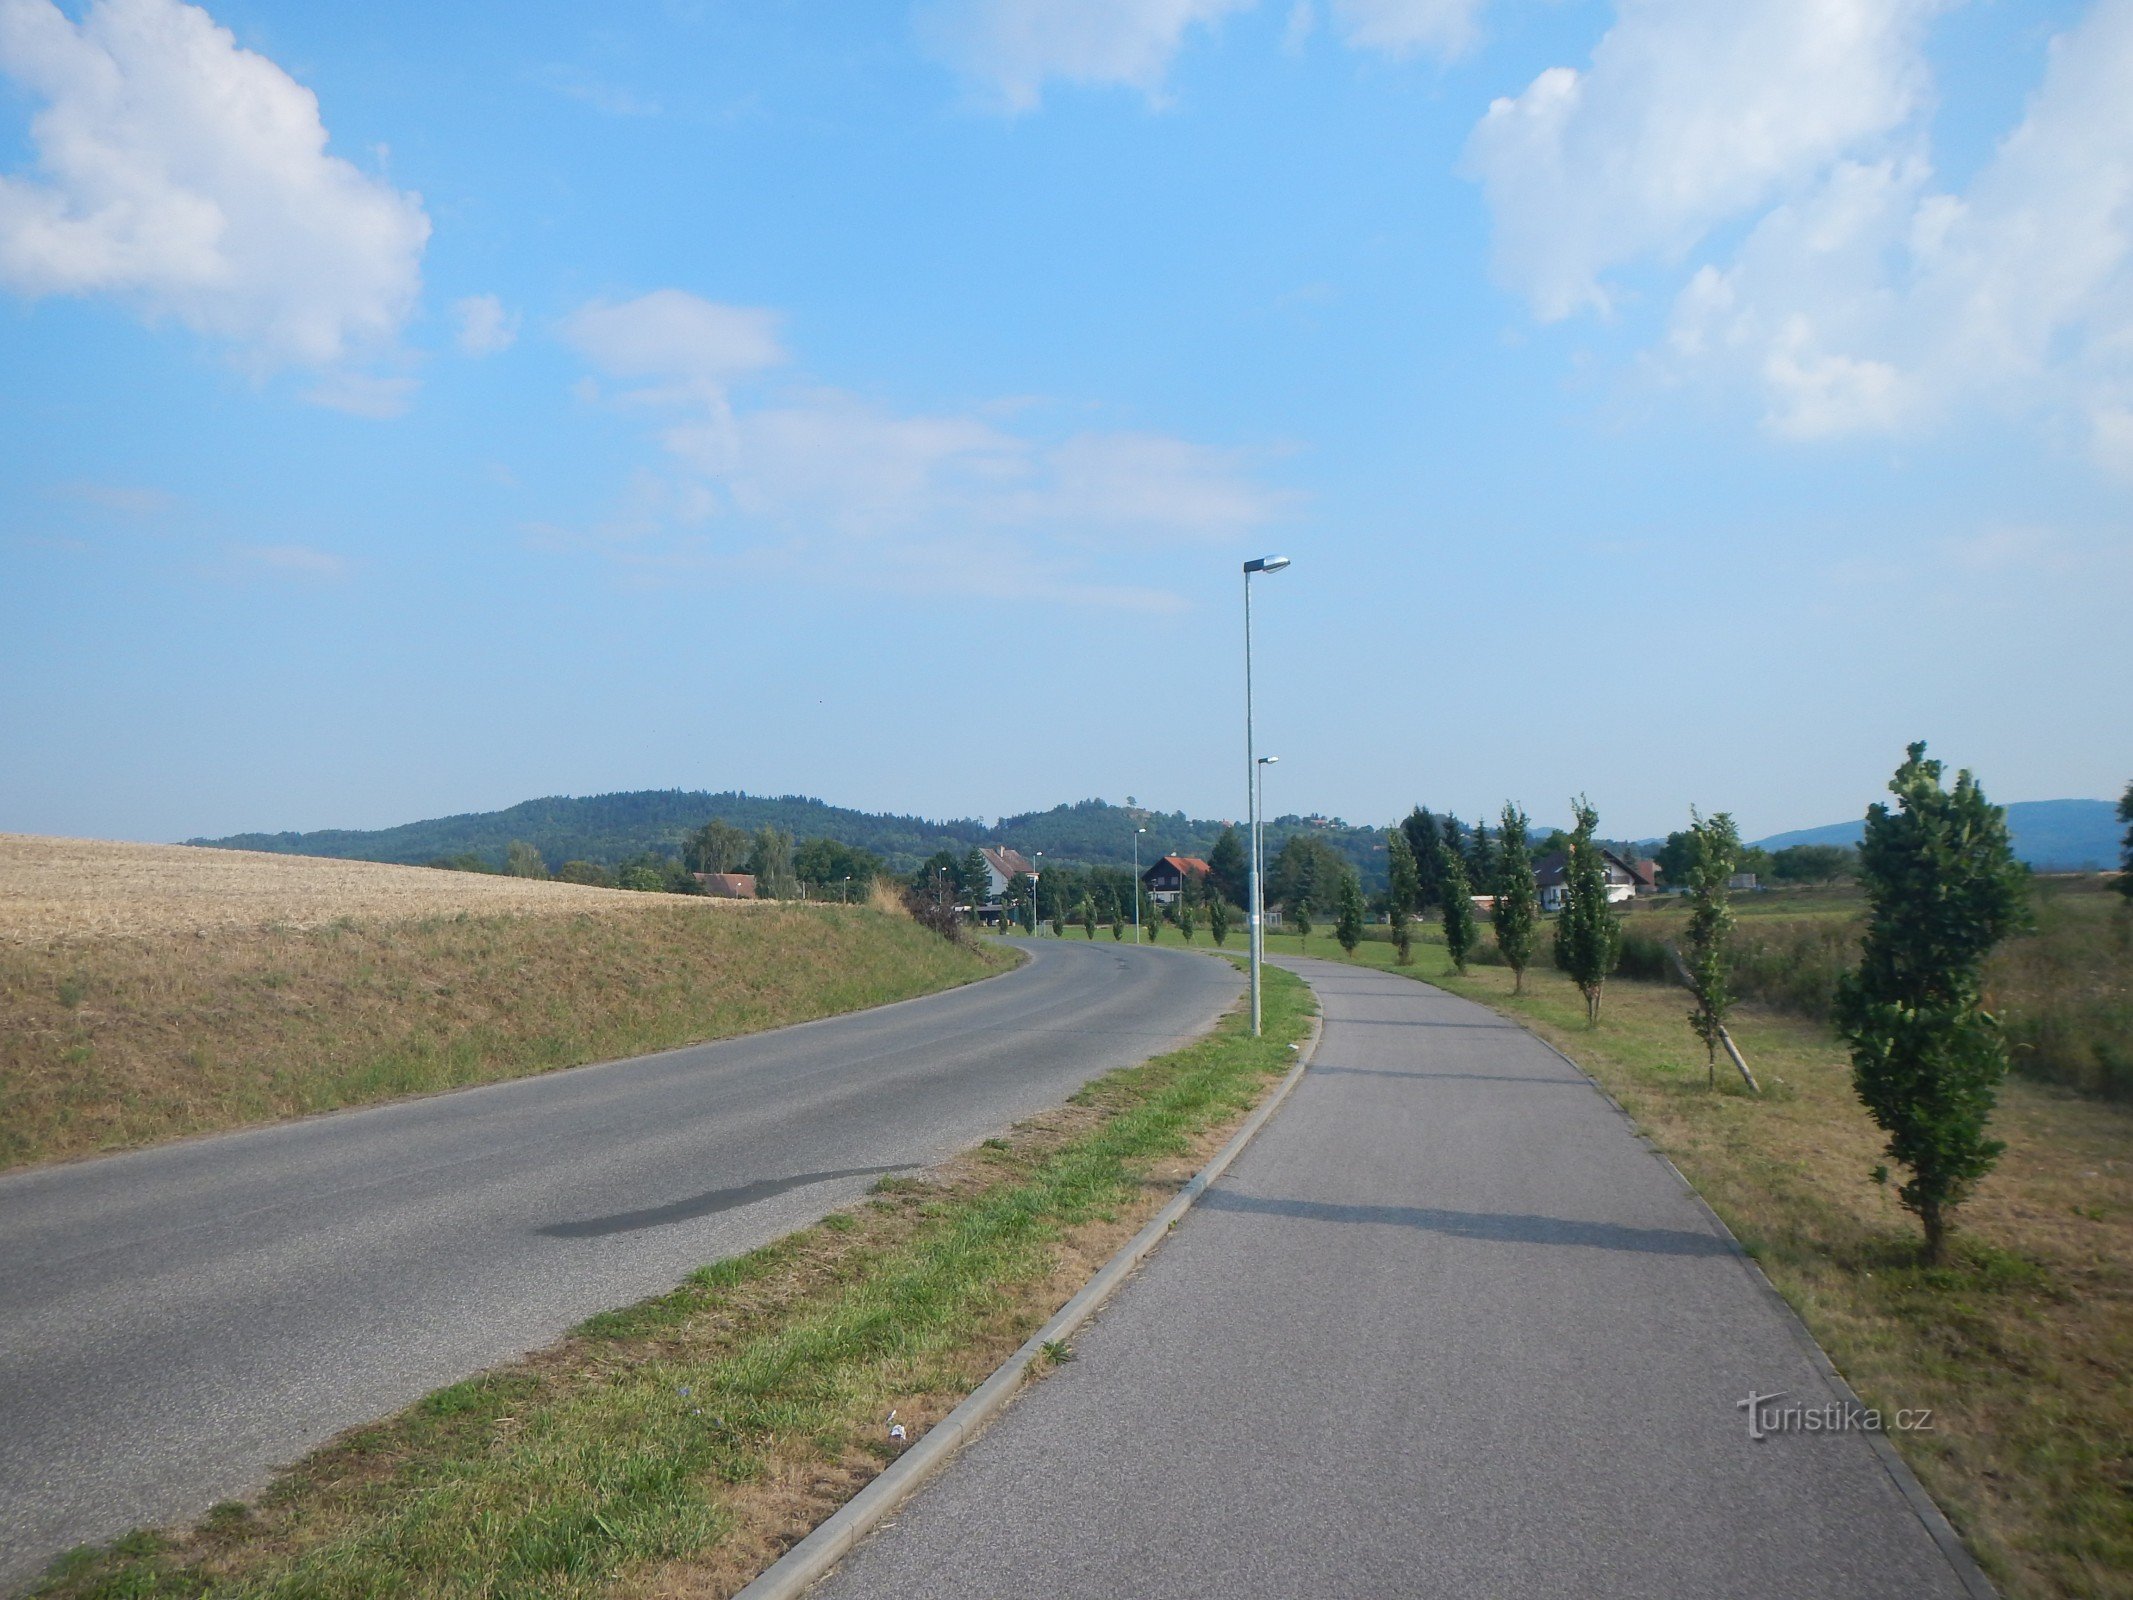 Biciklistička ruta br. 14 od Holína do Prachova. U pozadini brdo Přivýšina i Brada.